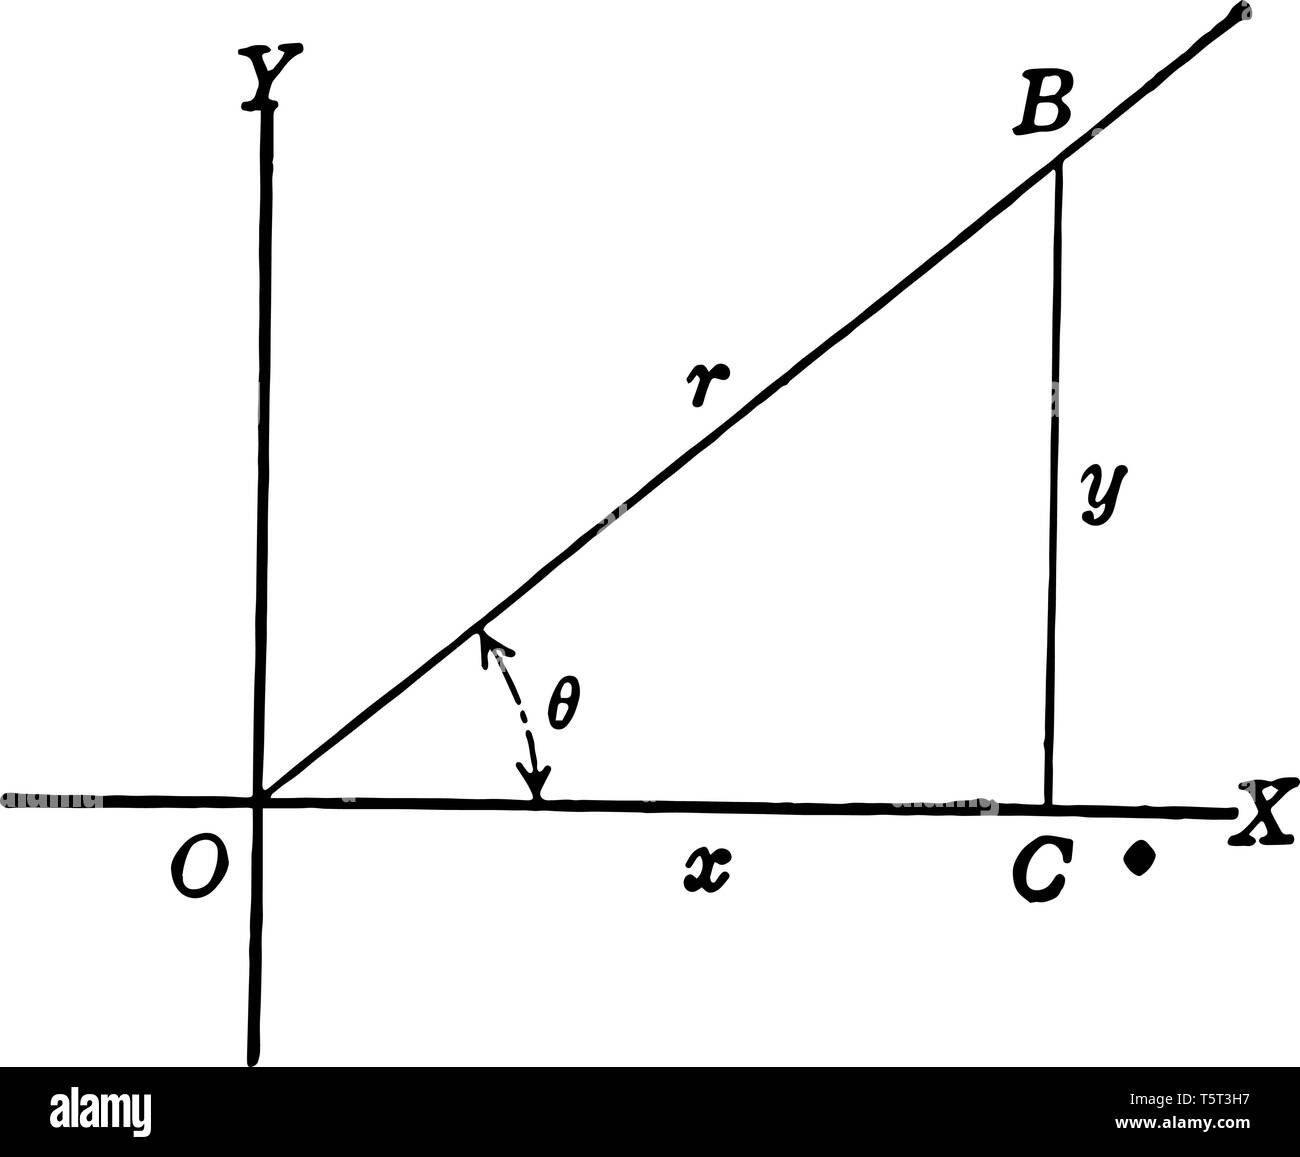 L'image montre le côté droit de la poe avec triangle, x, y et r. Il y a une ligne droite dans le premier quadrant qui forme un angle avec l'axe x et le l Illustration de Vecteur